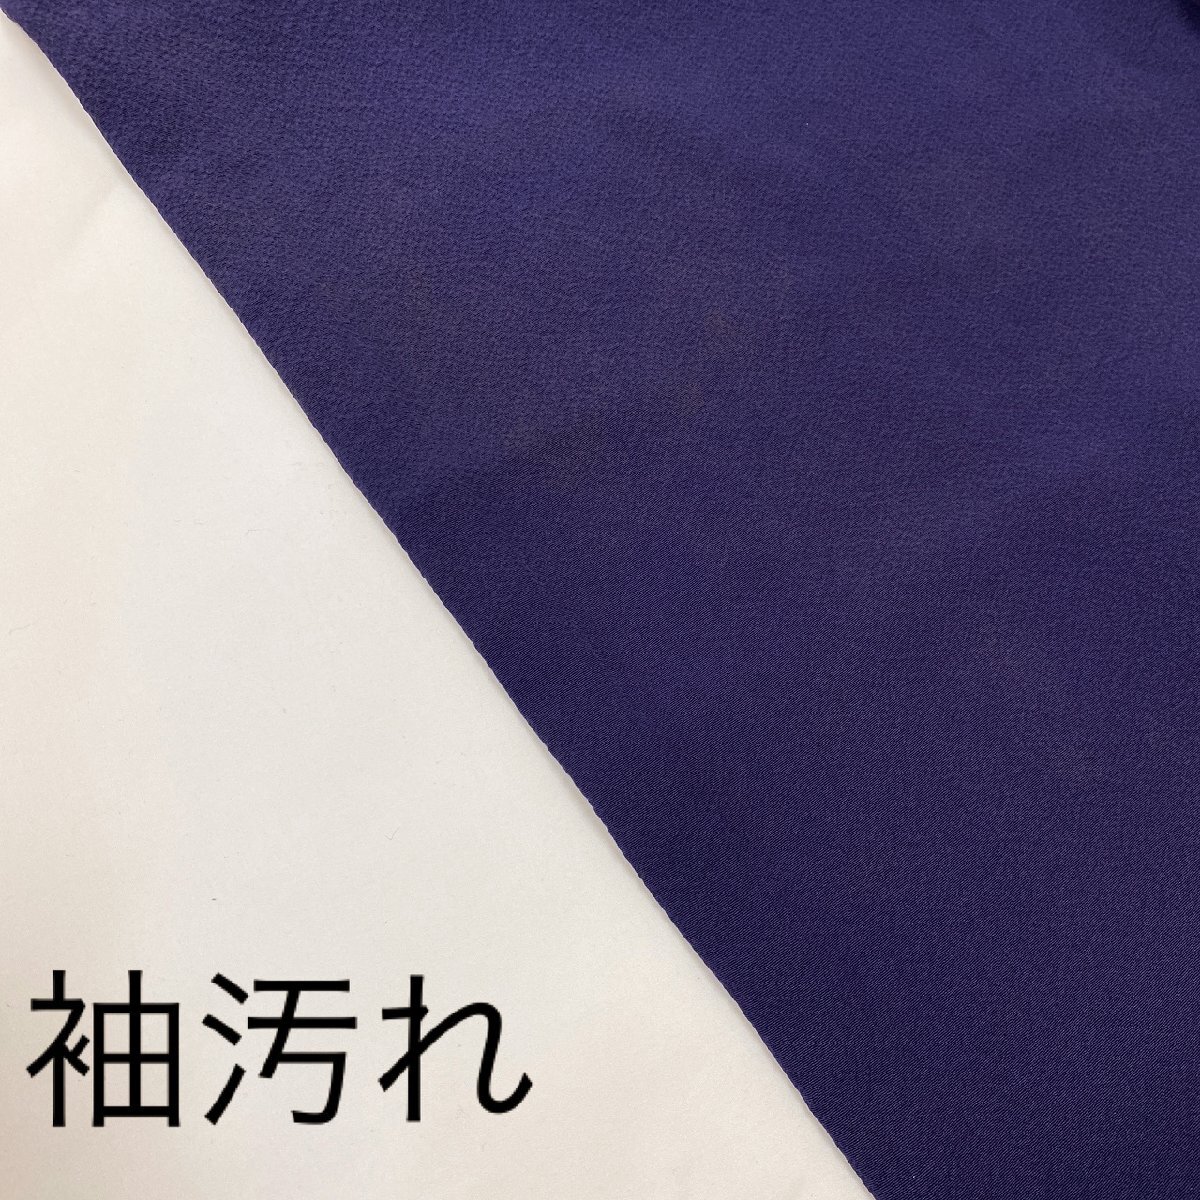 着物月花 人形師 辻村寿三郎 ジュサブロー 花うさぎ 振袖 正絹 縮緬 共八掛 ki1495の画像10